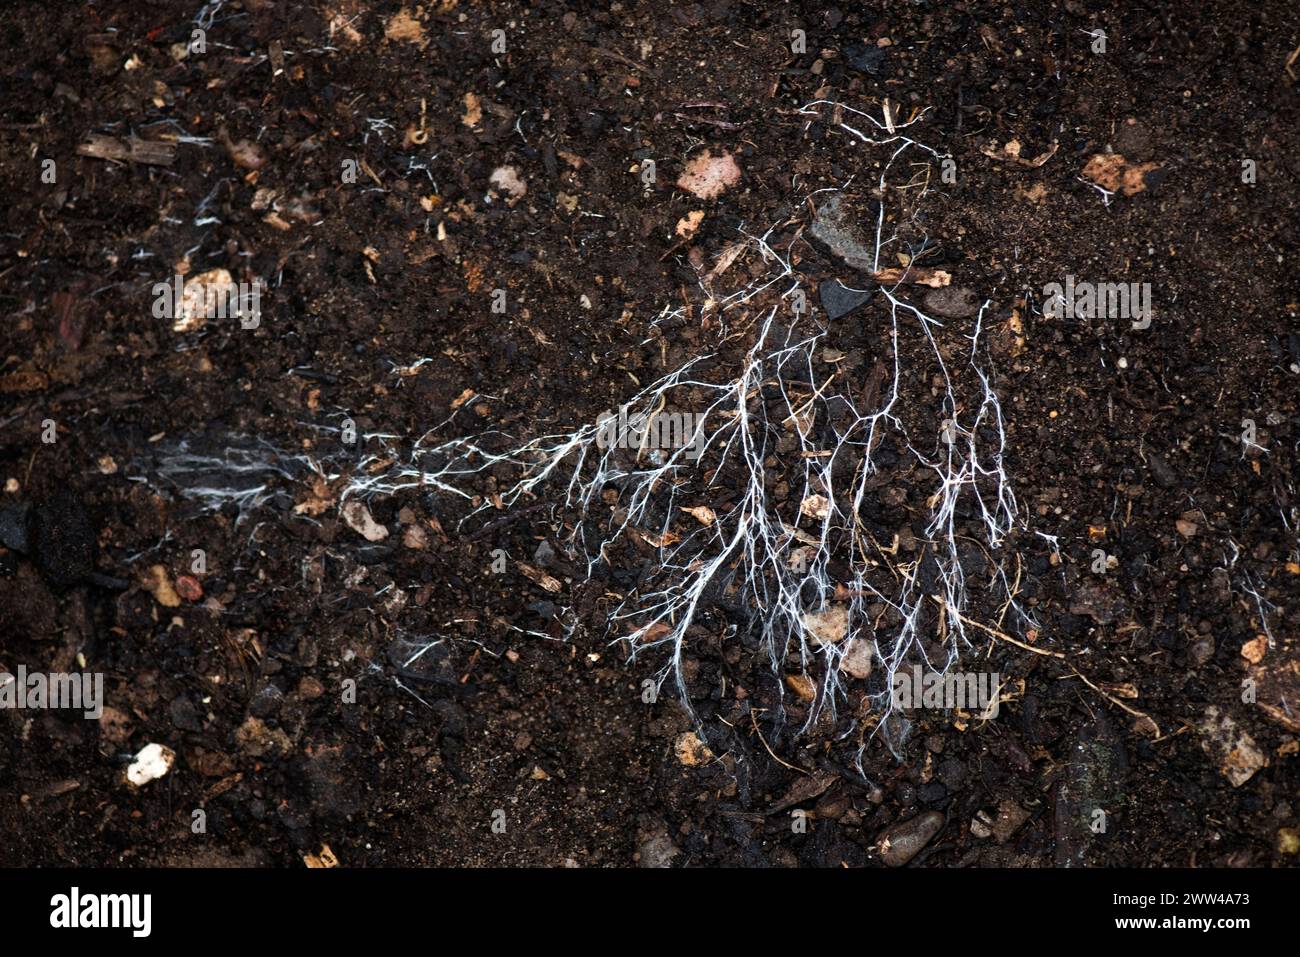 Fili di ramificazione del micelio fungo che si diffondono su terreno organico. Un organismo simbiotico micorrizale che interagisce con le radici di piante e alberi, Berkshi Foto Stock